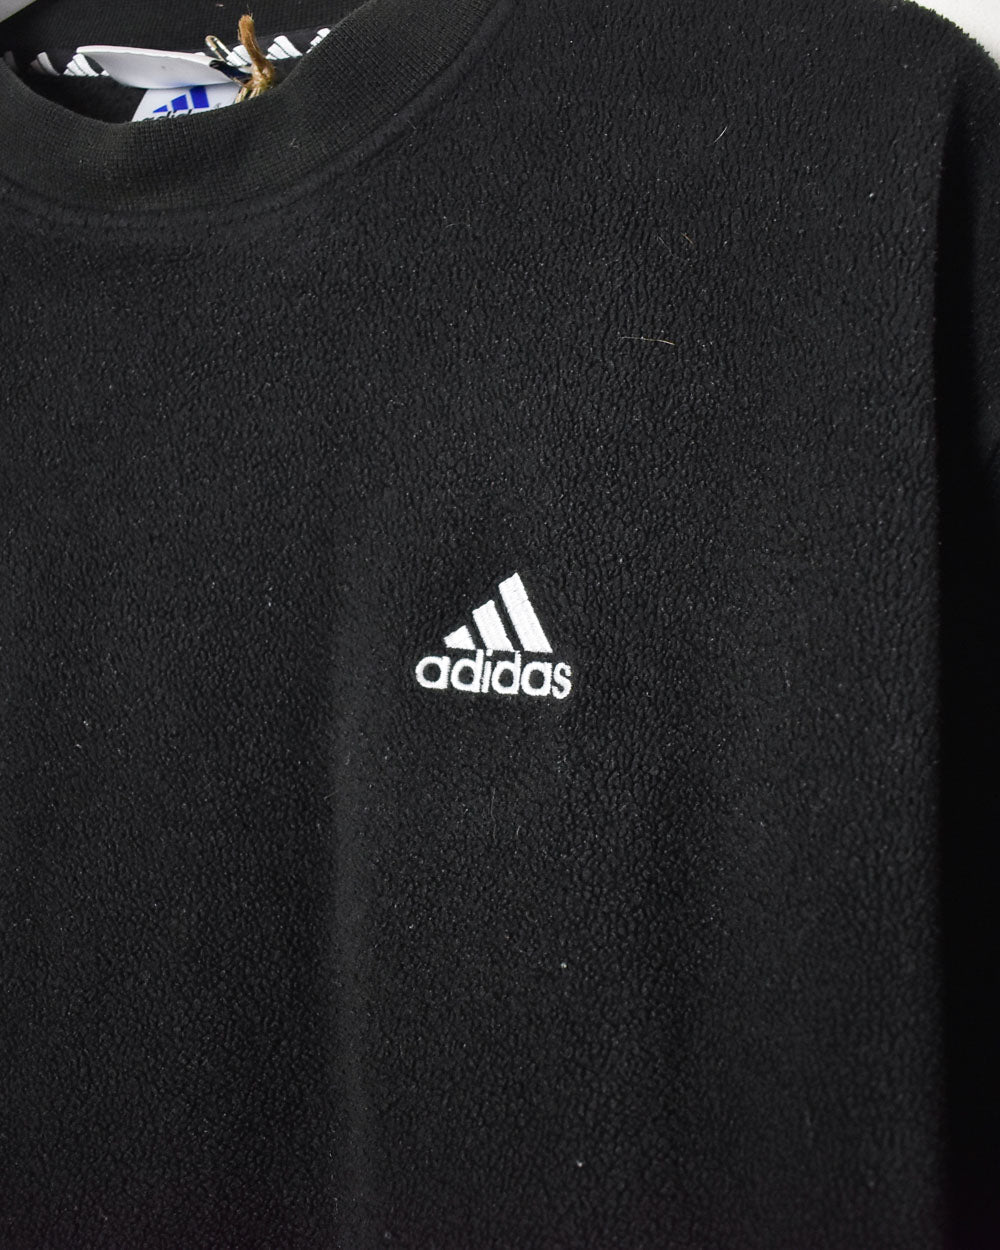 Black Adidas Pullover Fleece - Medium